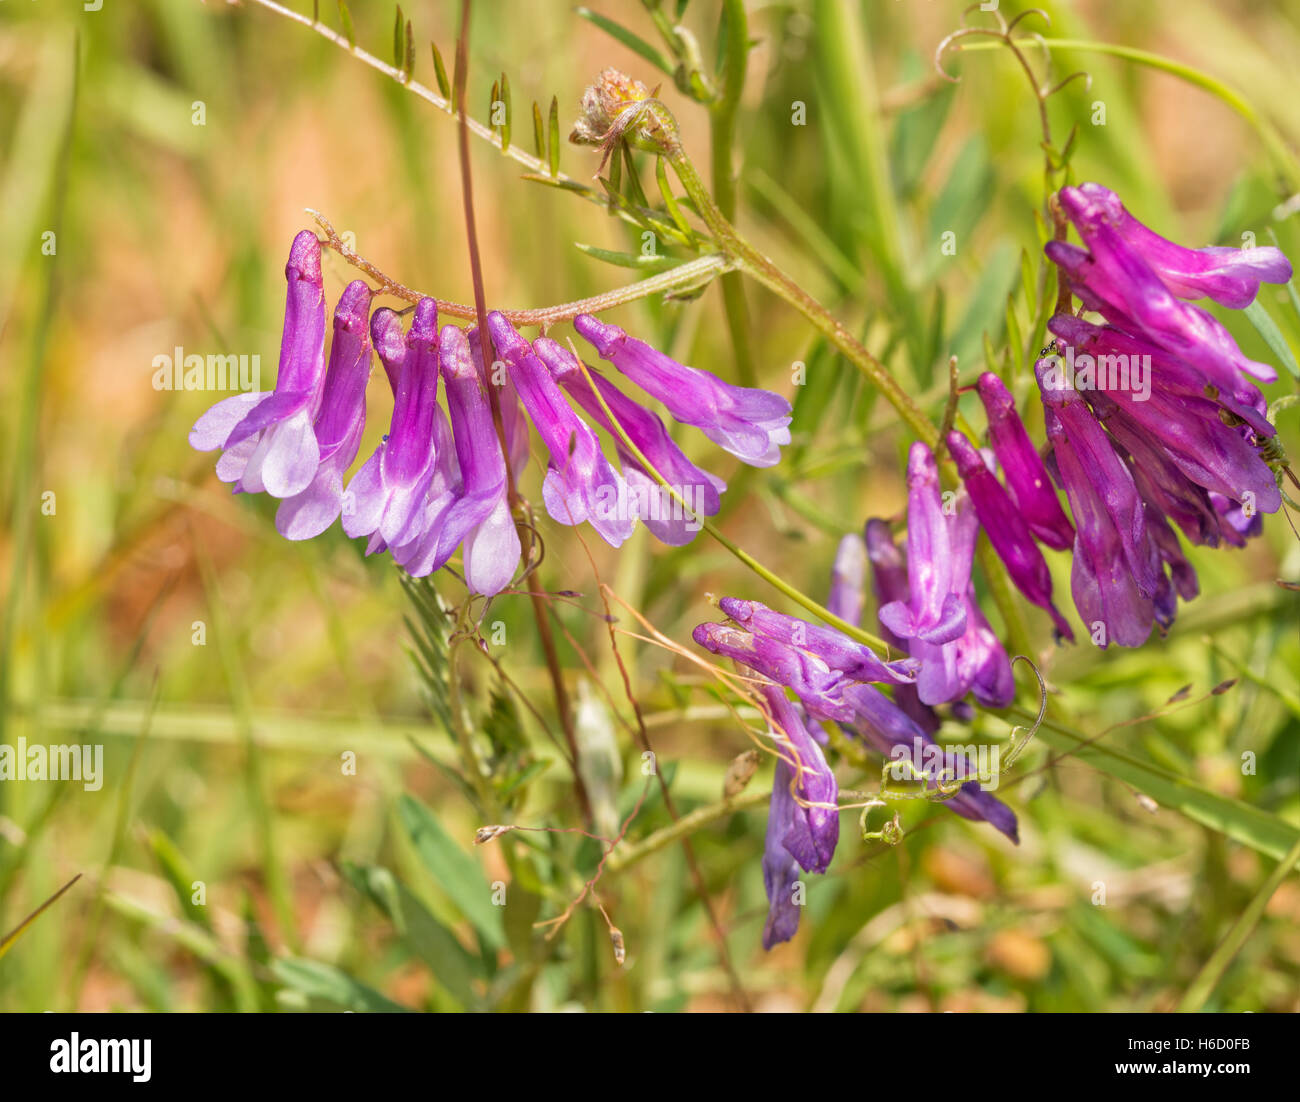 Los pequeños racimos florales de una veza común, Vicia, en sol de verano Foto de stock